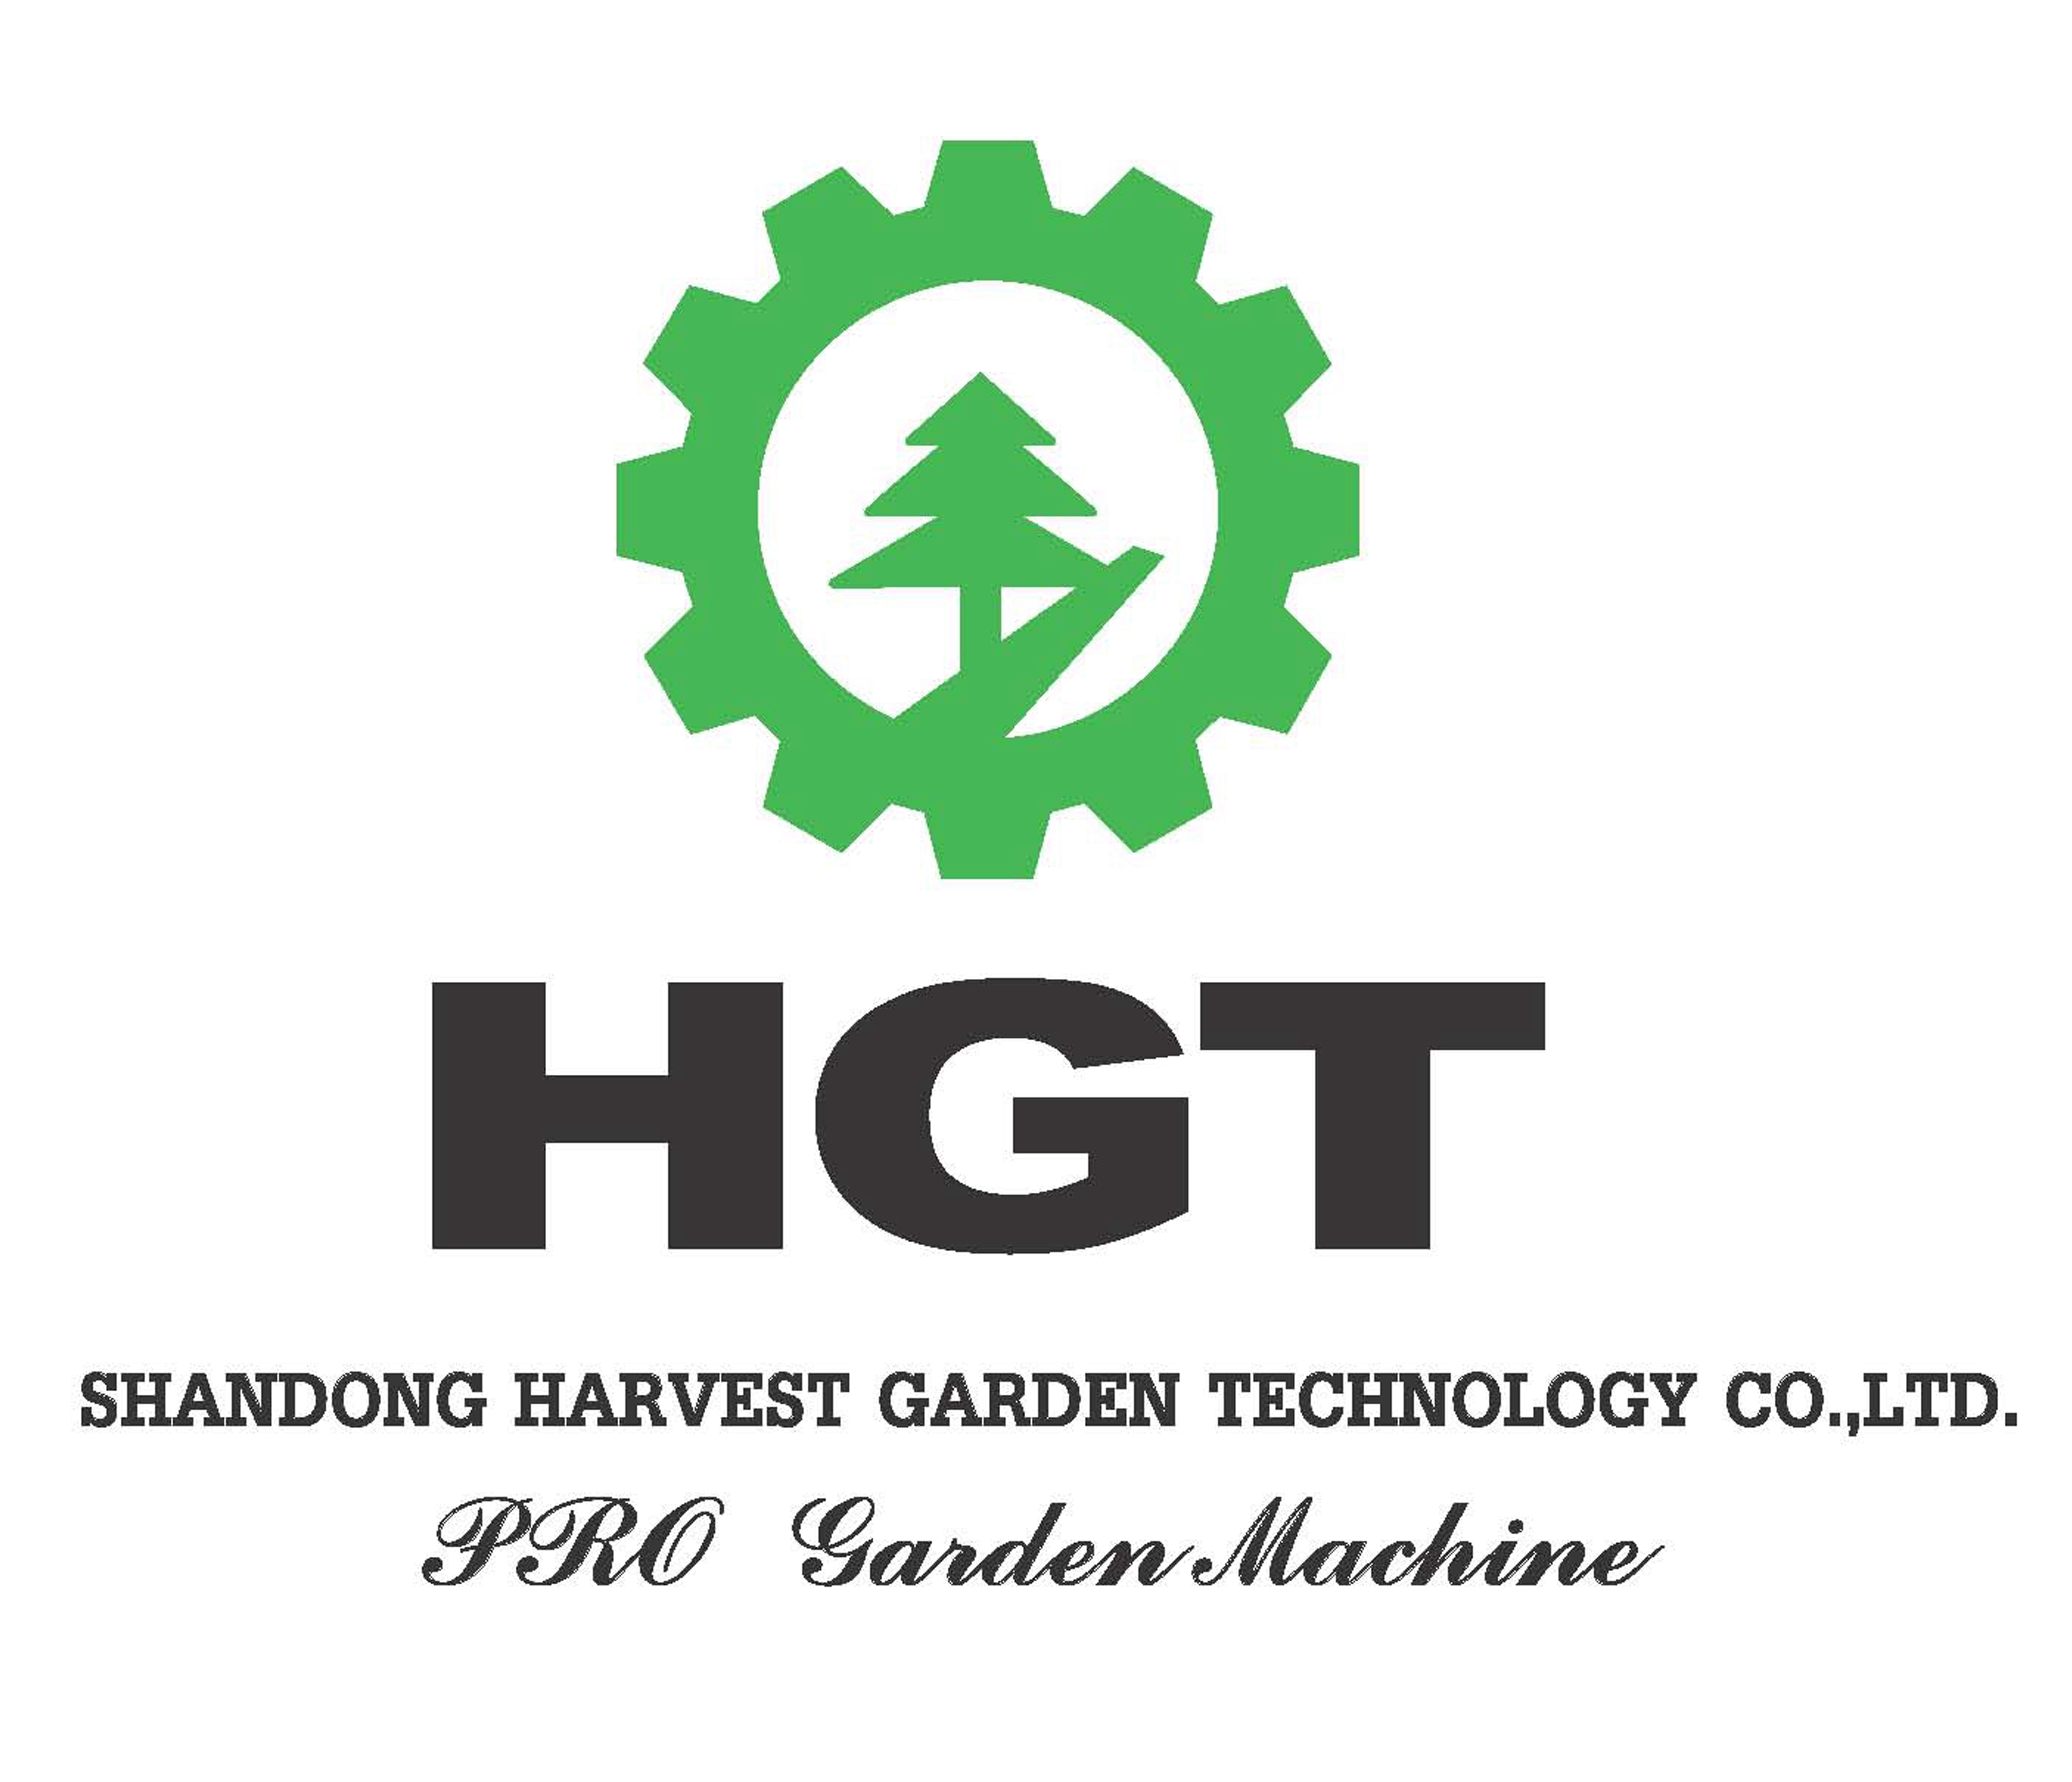 SHANDONG HARVEST GARDEN TECHNOLOGY CO.,LTD